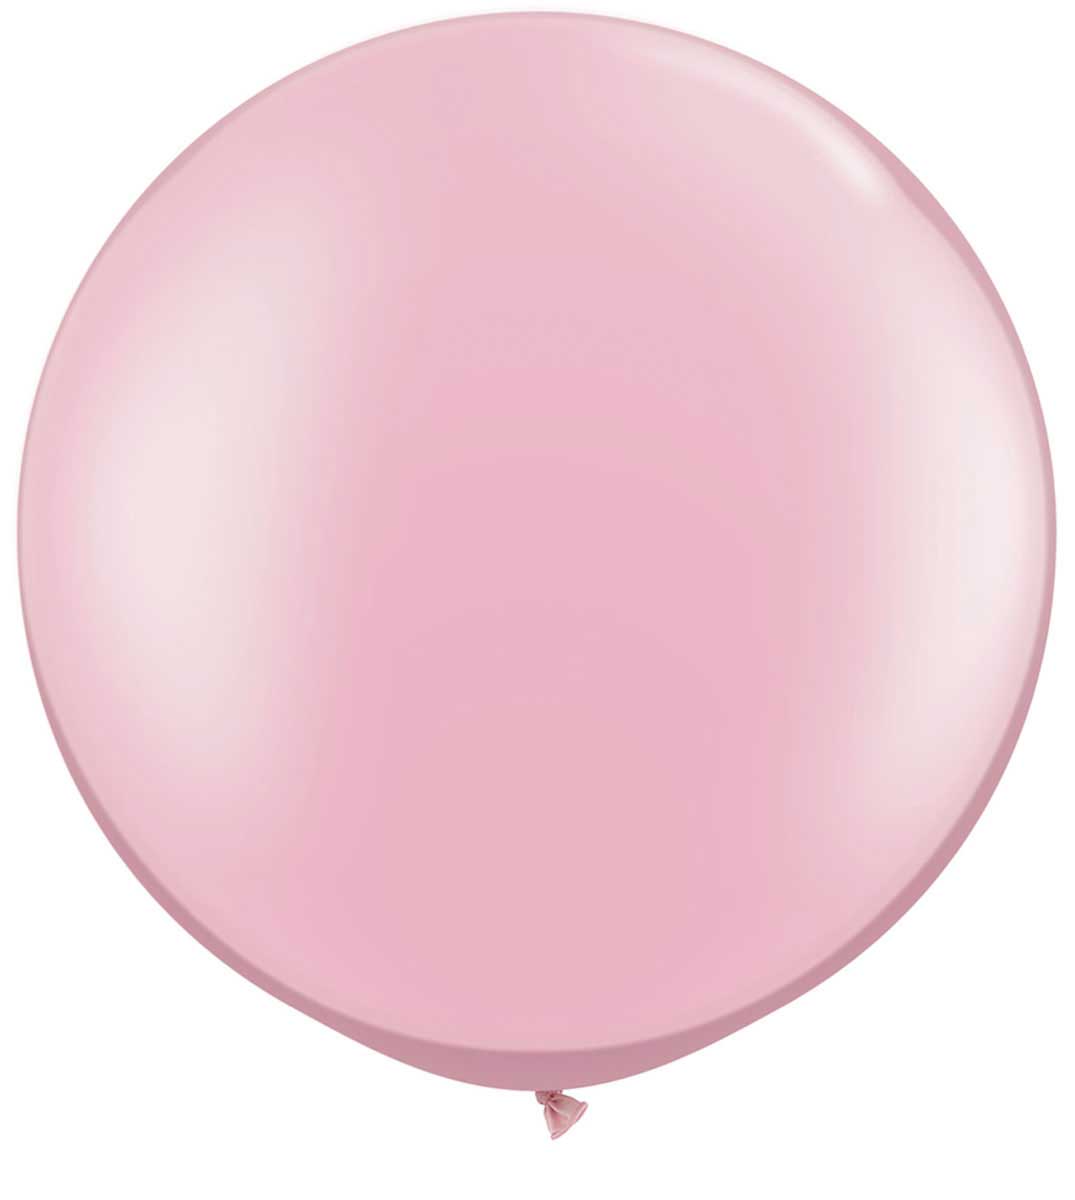 Roze Pearl Ballon XL - 90cm